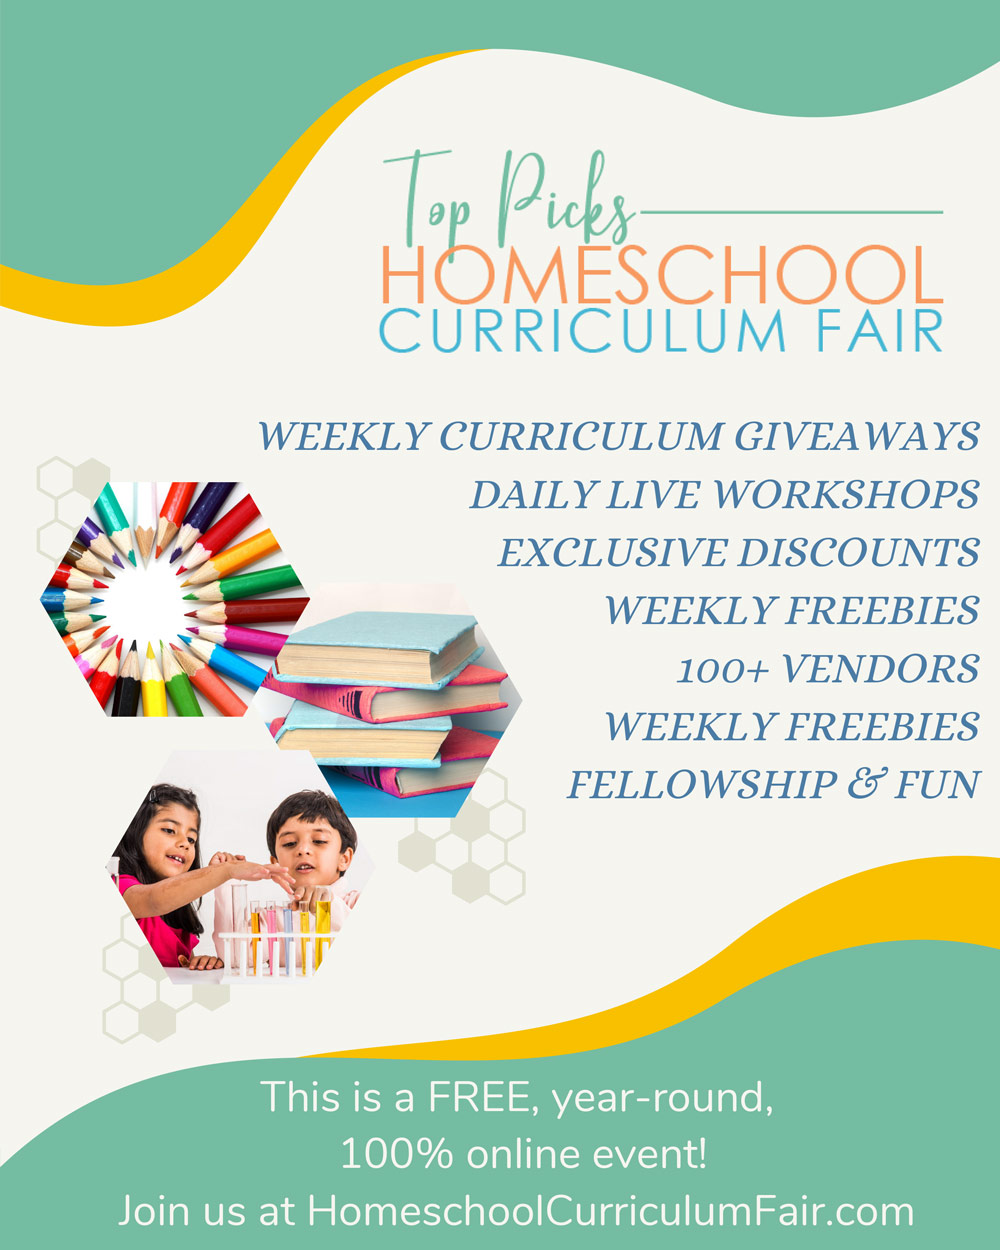 Top Picks Homeschool Curriculum Fair Advertisement